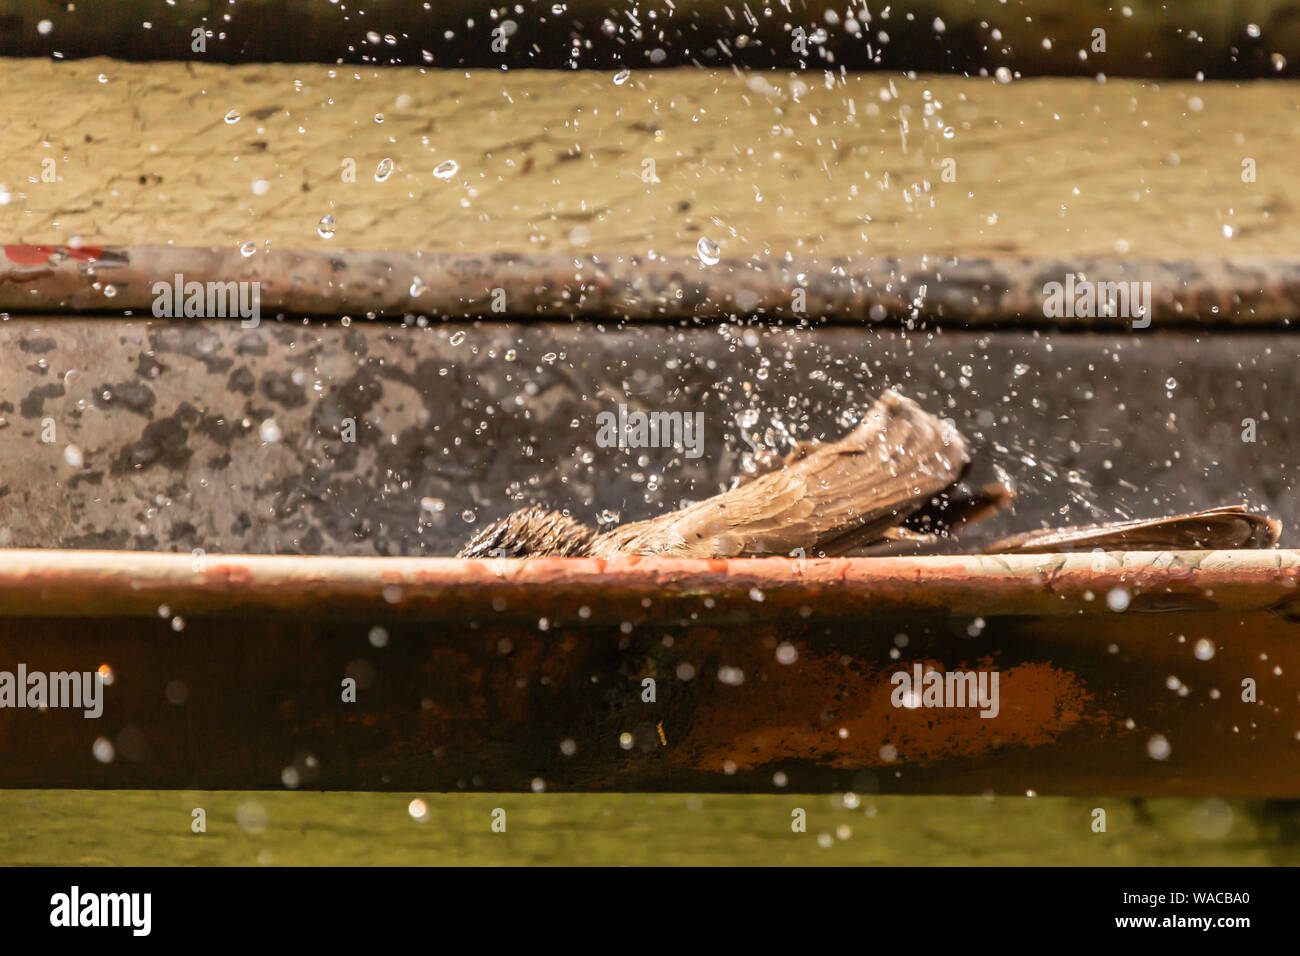 Kreative wildlife Verhalten Foto von gemeinsamen teilweise verdeckten Bulbul Vogel planschen in der dachrinne Wasser in Aktion gefroren, in Kenia. Stockfoto